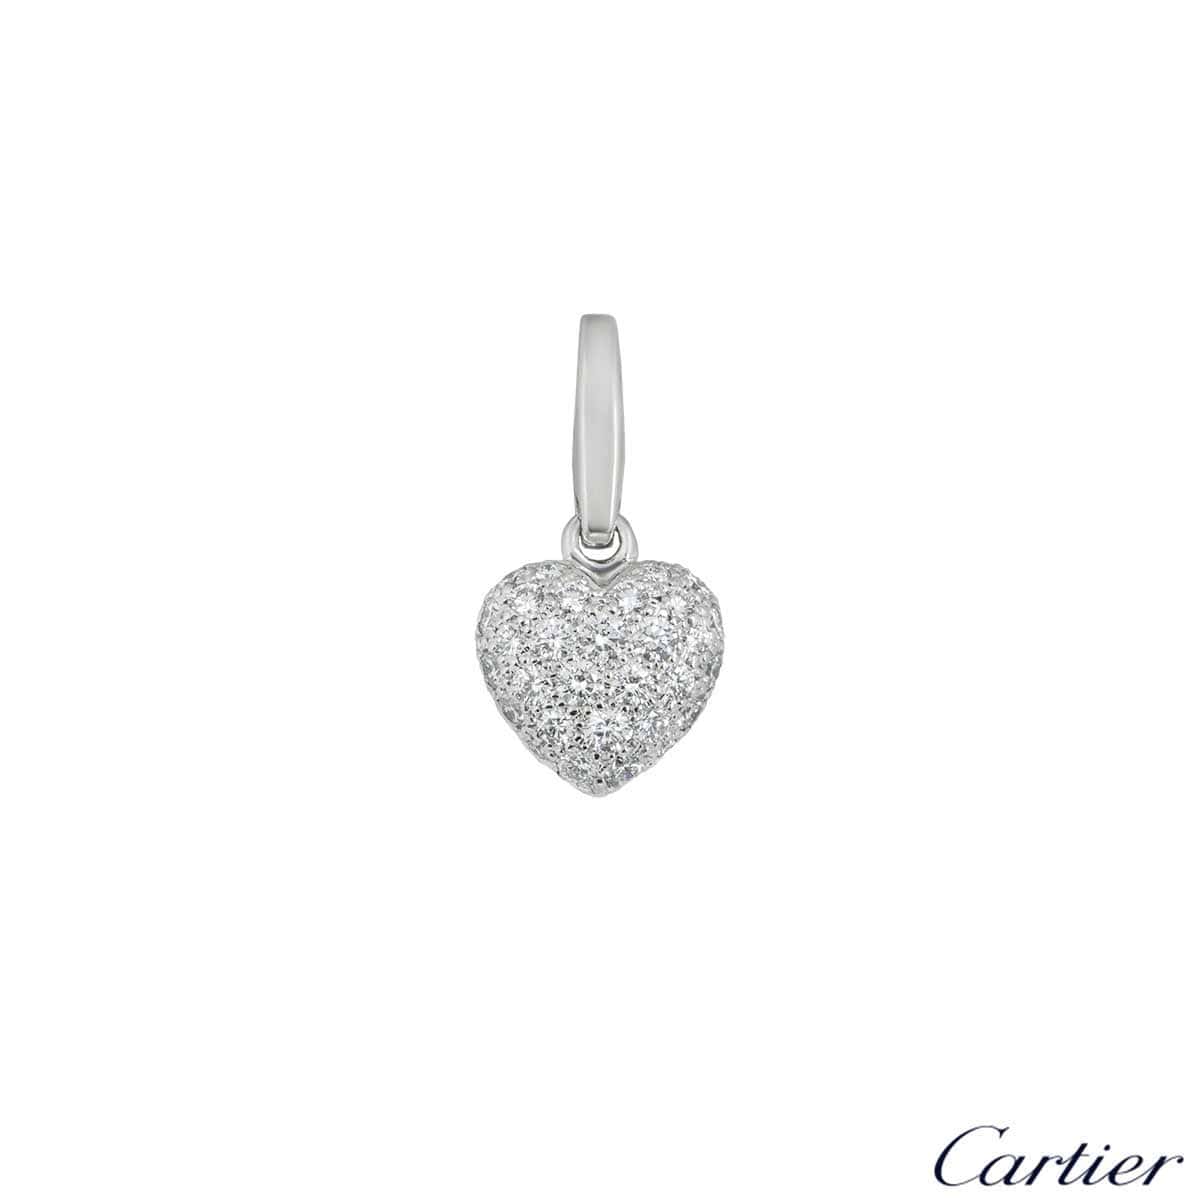 cartier heart shaped pendant